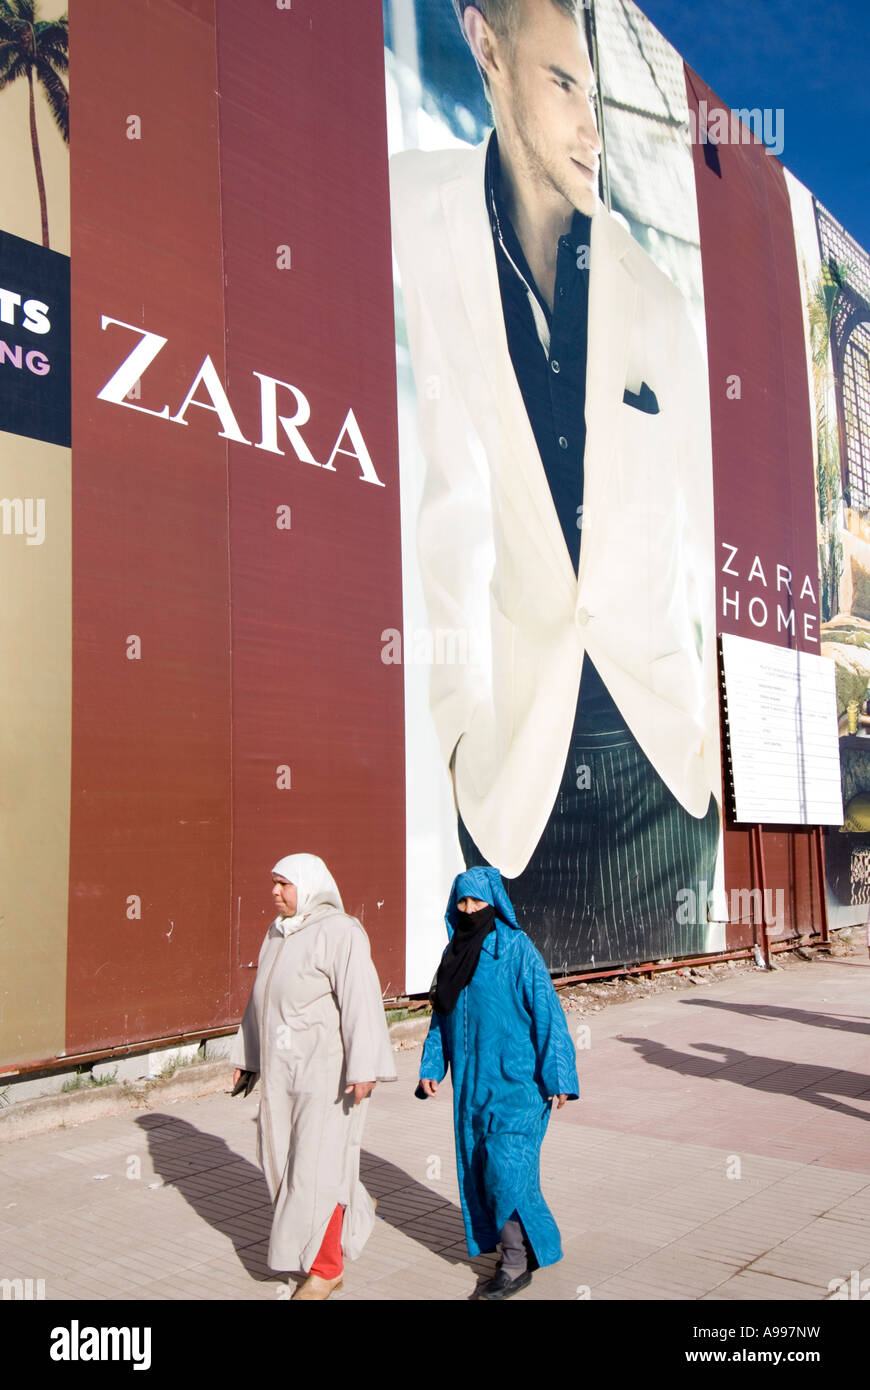 La publicité de l'étiquette d'une chaîne de magasins de vêtements Zara à GUELIZ Marrakech Maroc Banque D'Images